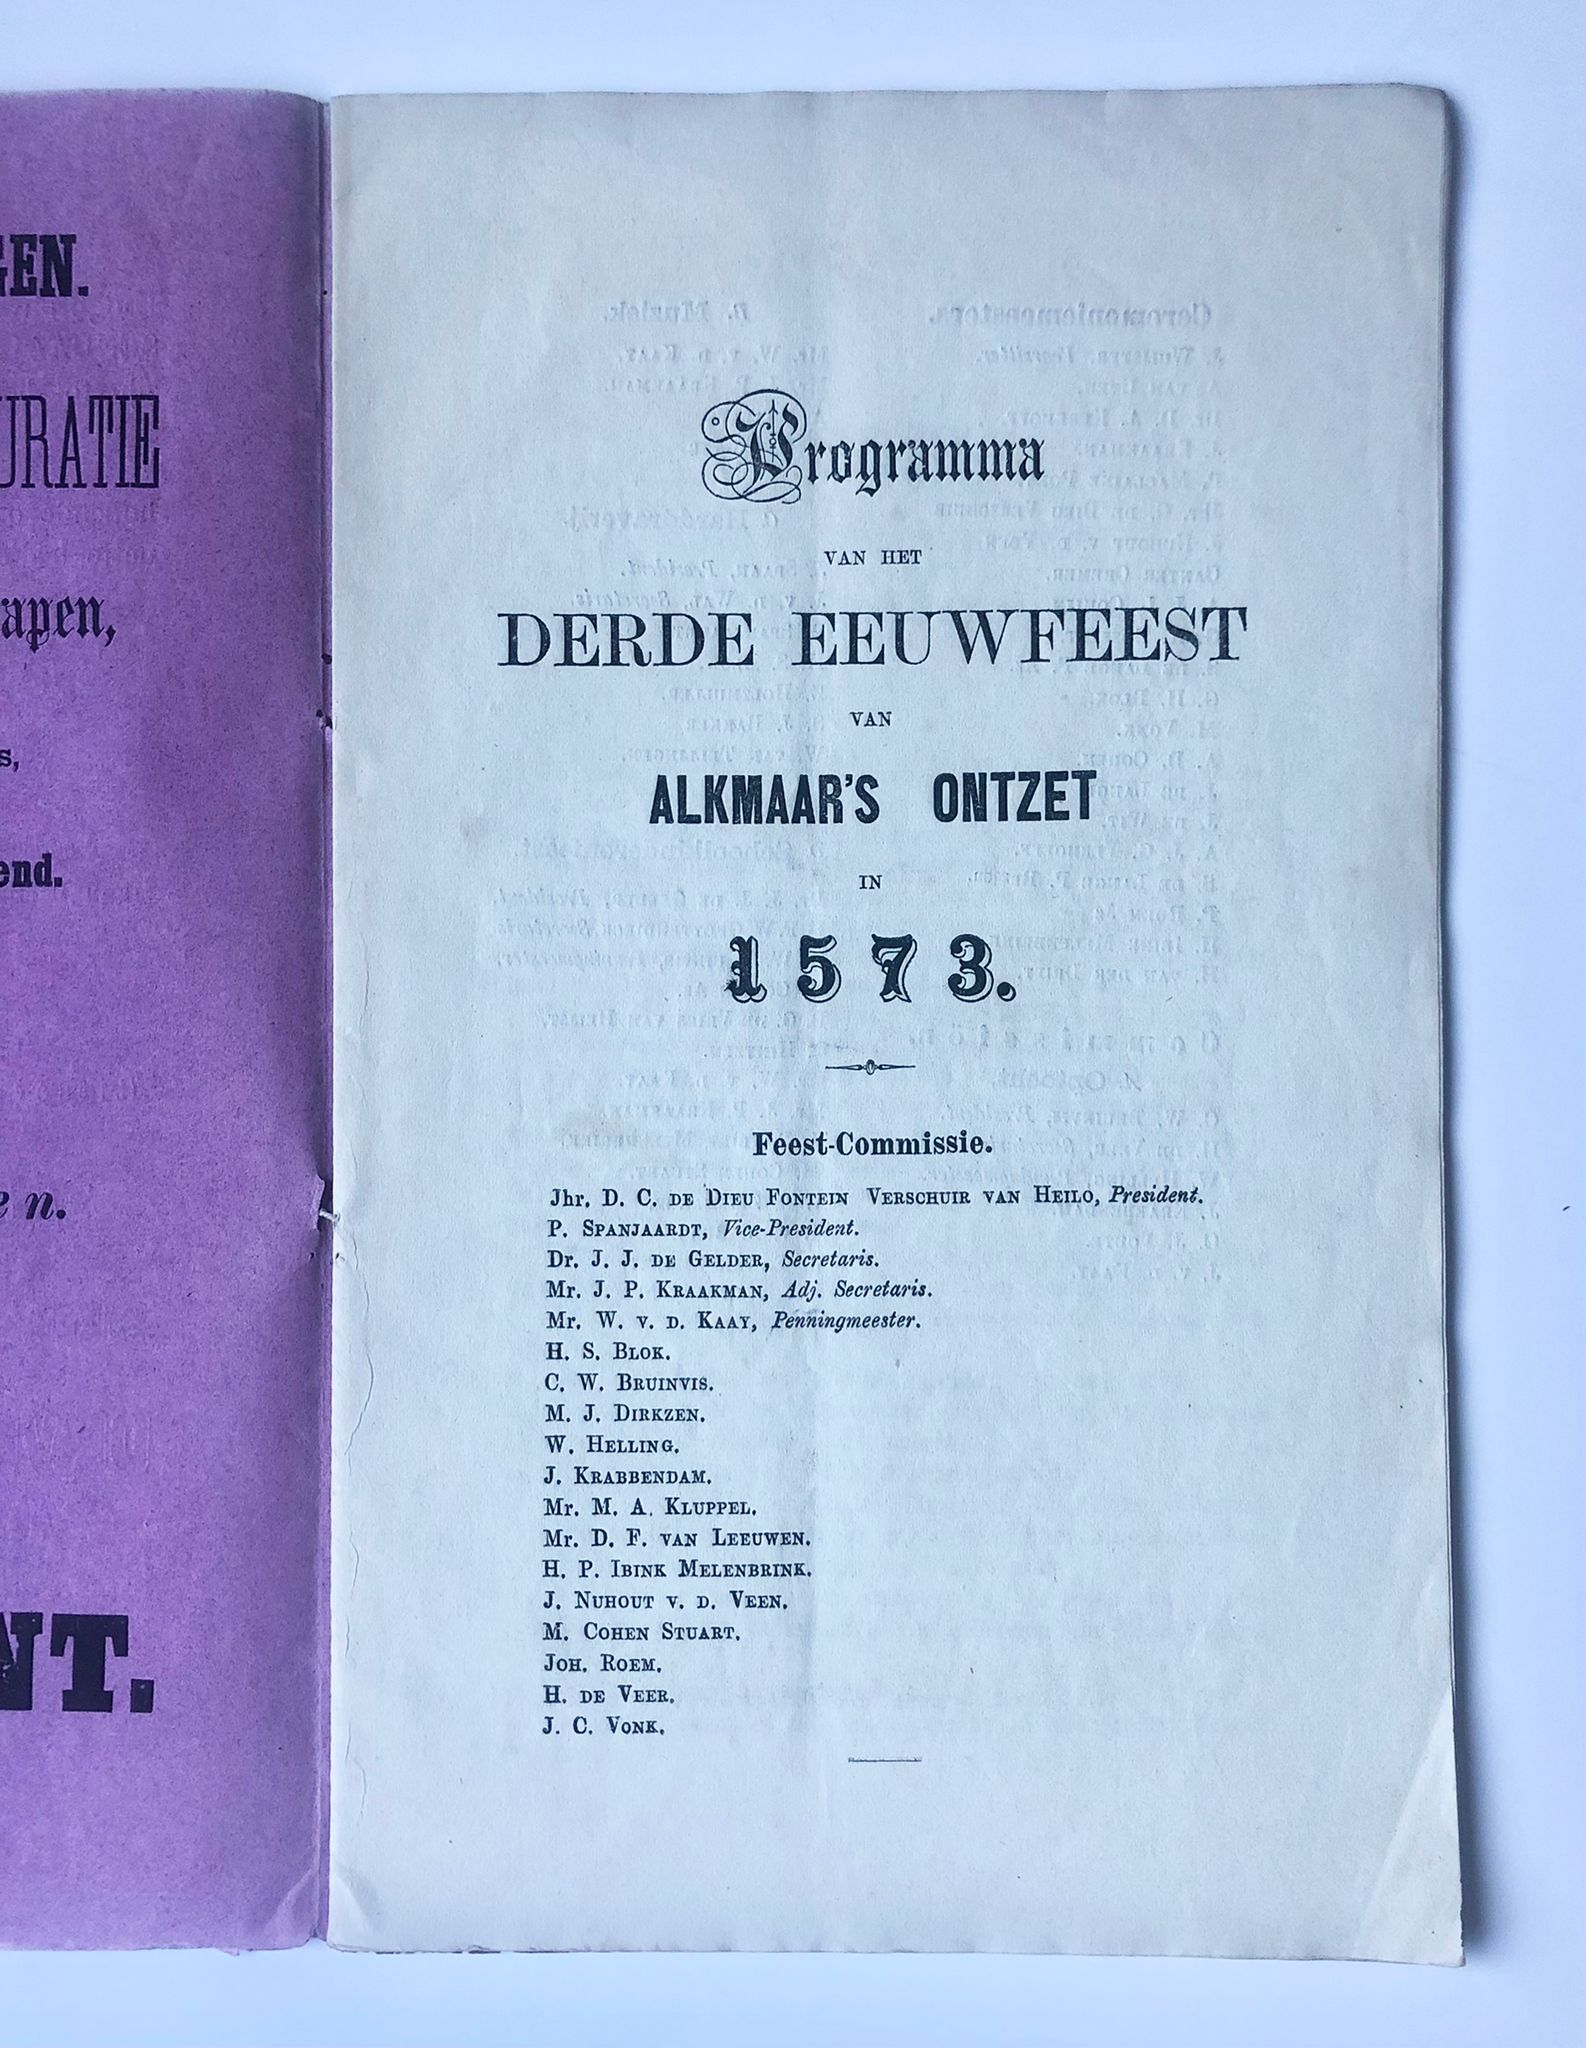 [Antique book 1873, Alkmaar, Noord-Holland] Feestwijzer. Programma voor het Derde Eeuwfeest van Alkmaar’s Ontzet in 1573. Uitgegeven van wege de Feest-Commissie. Johannes Roem, Alkmaar, 1873, 22 pp.